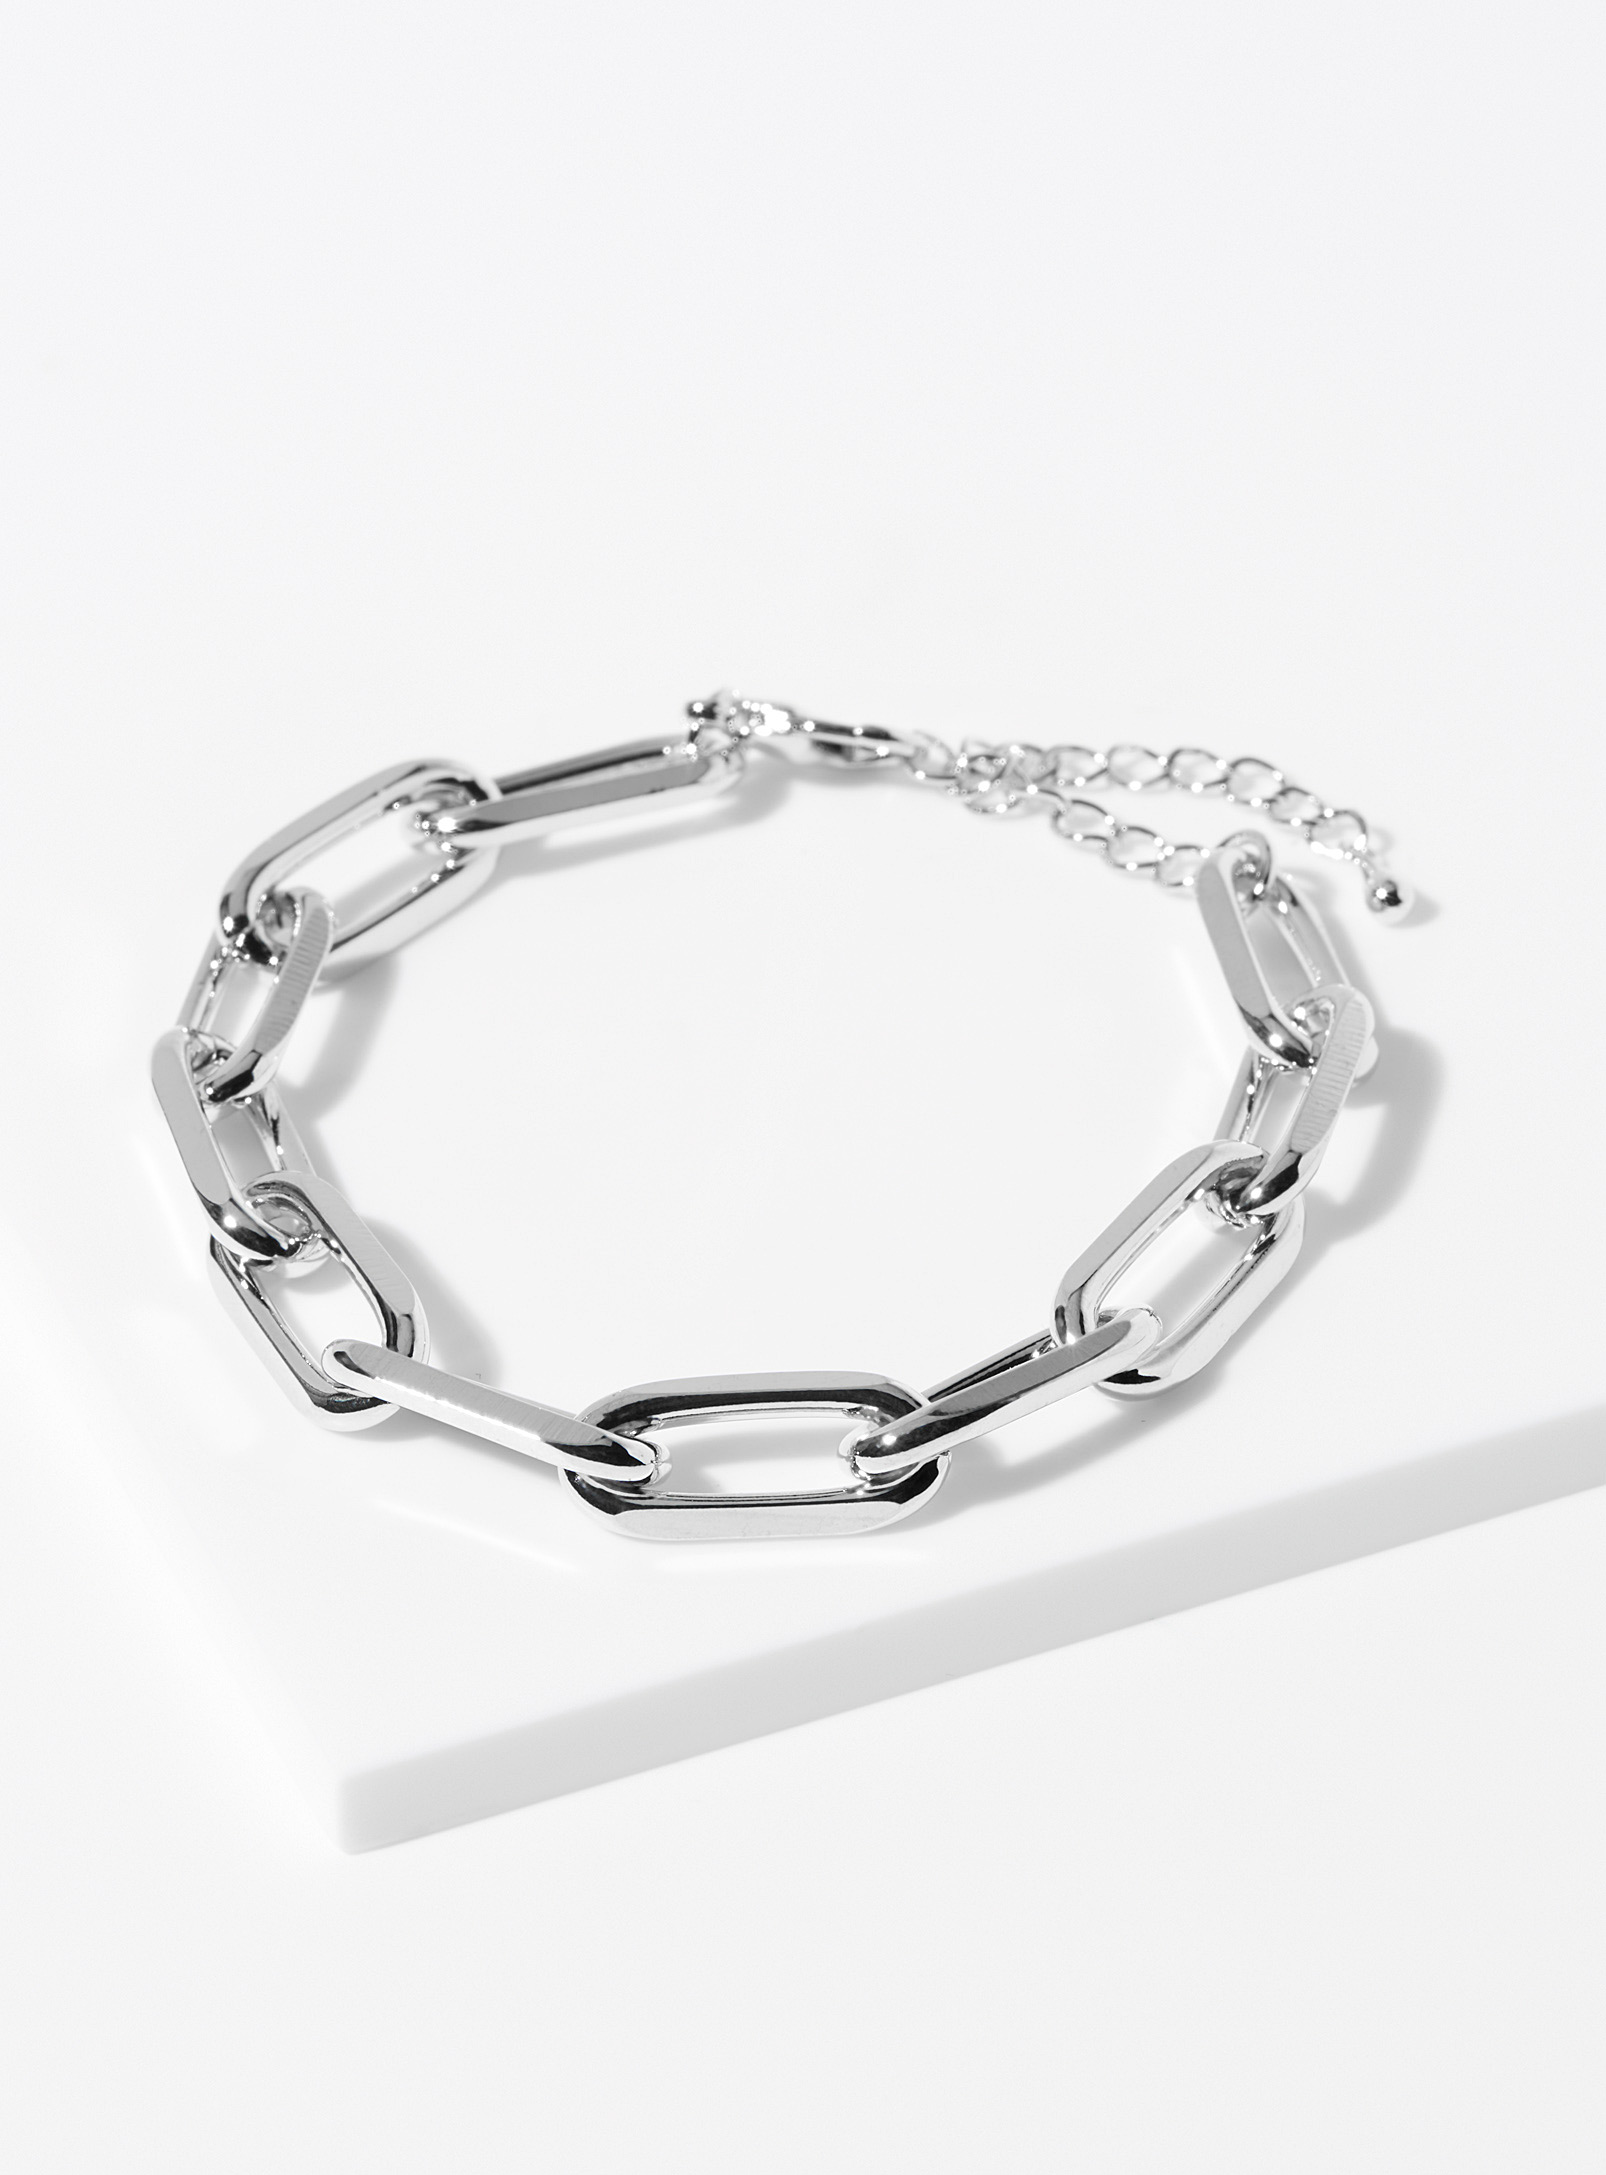 Simons - Women's Oval-link bracelet